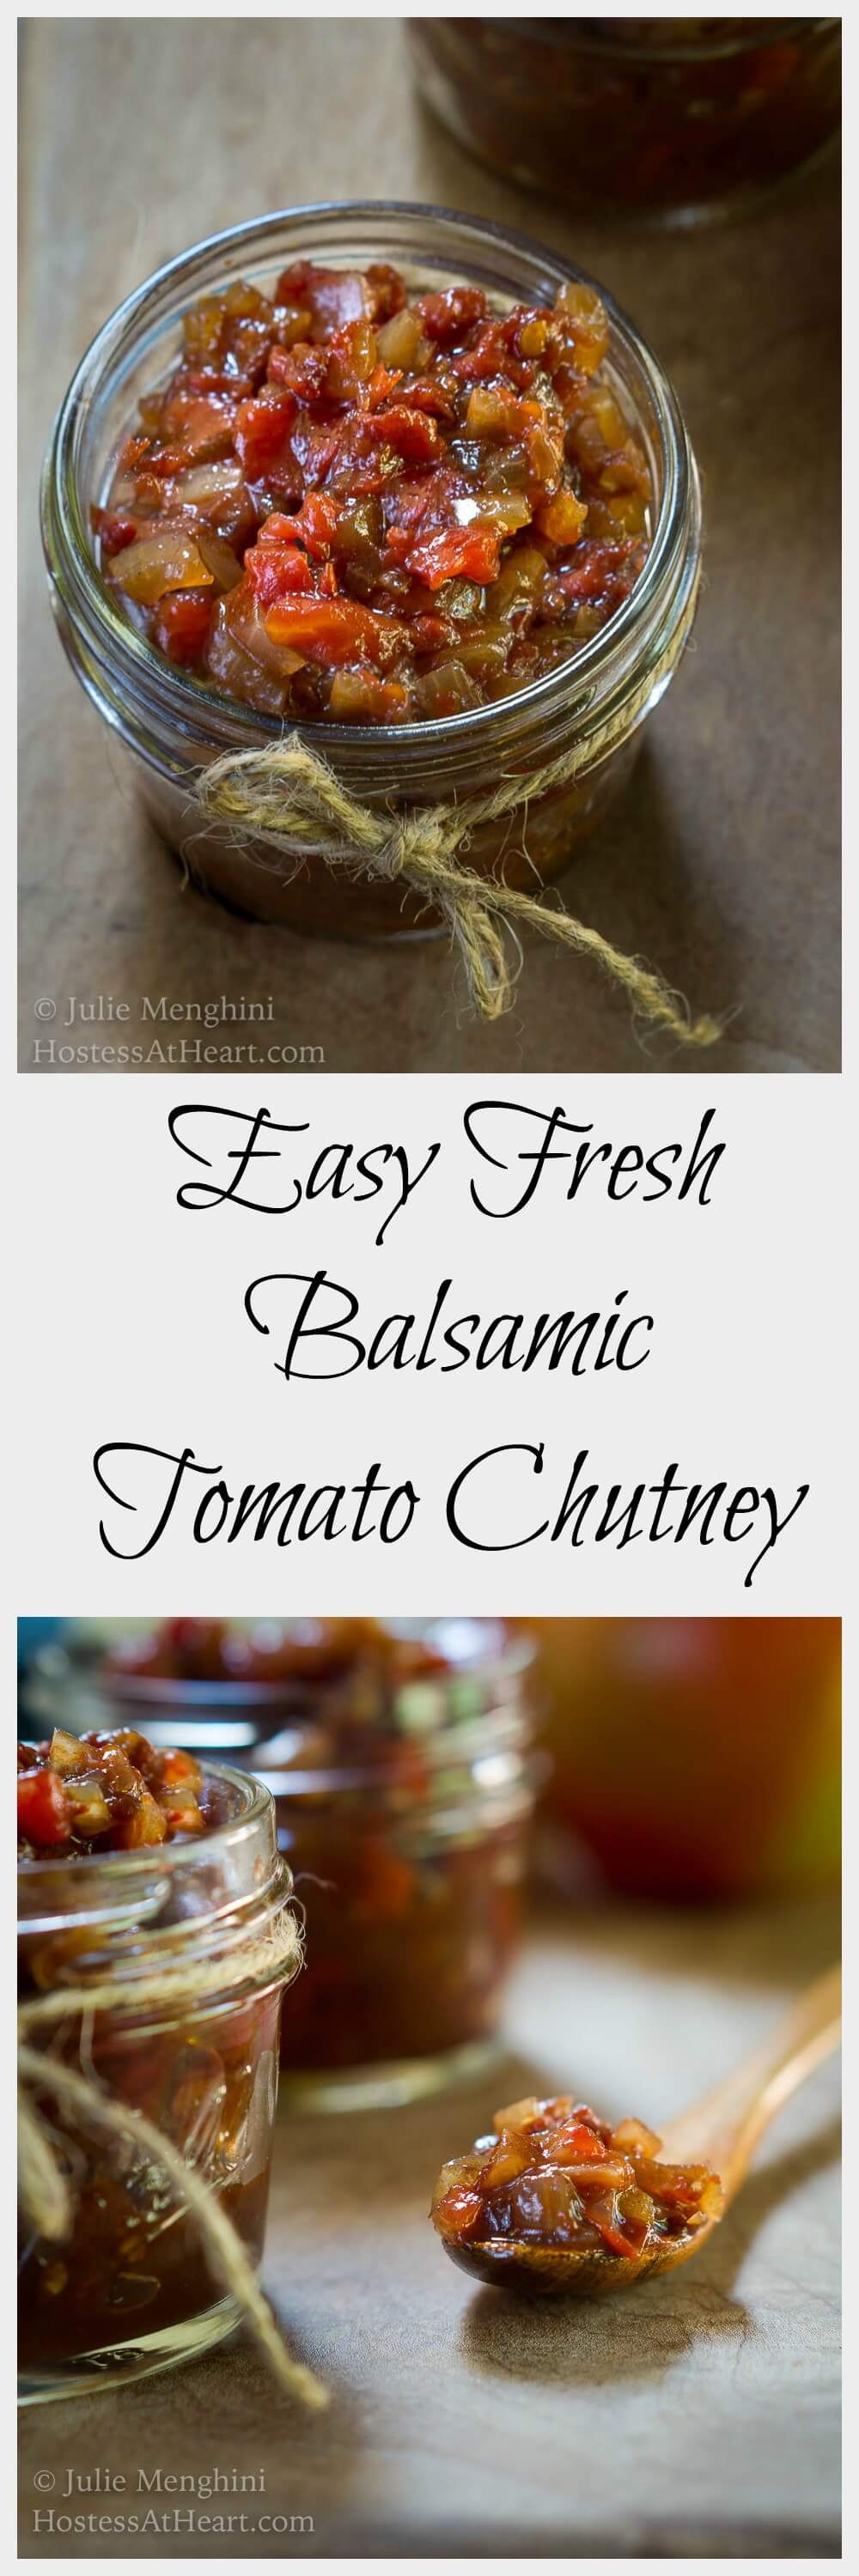 Easy Fresh Balsamic Tomato Chutney Recipe | Hostess At Heart